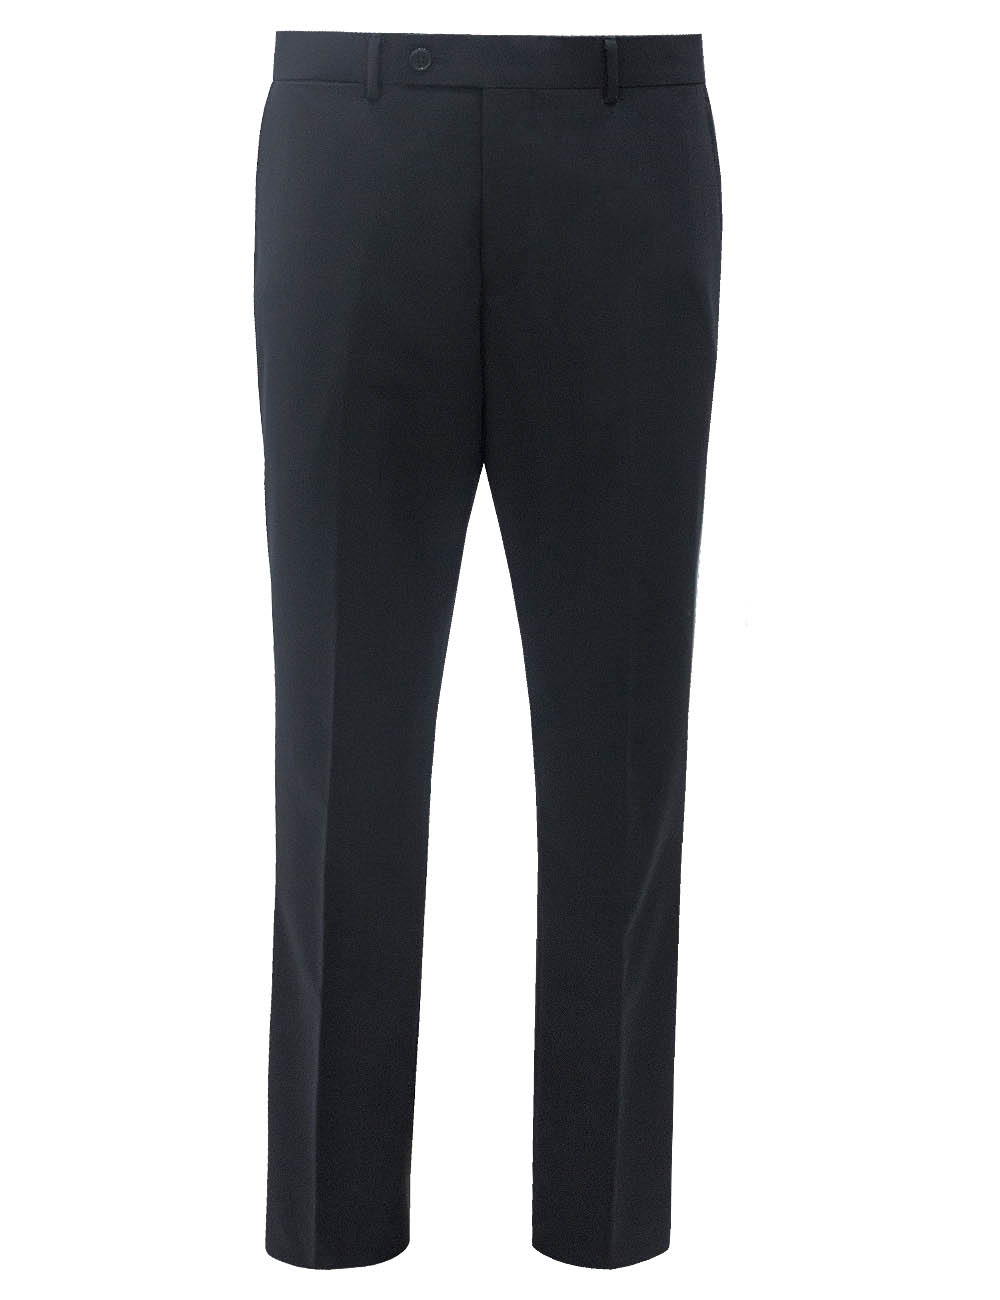 Men's Stretchy Slim Fit Casual Pants,100% Cotton Flat Front Trousers Dress  Pants For Men,Black Pants Size 35